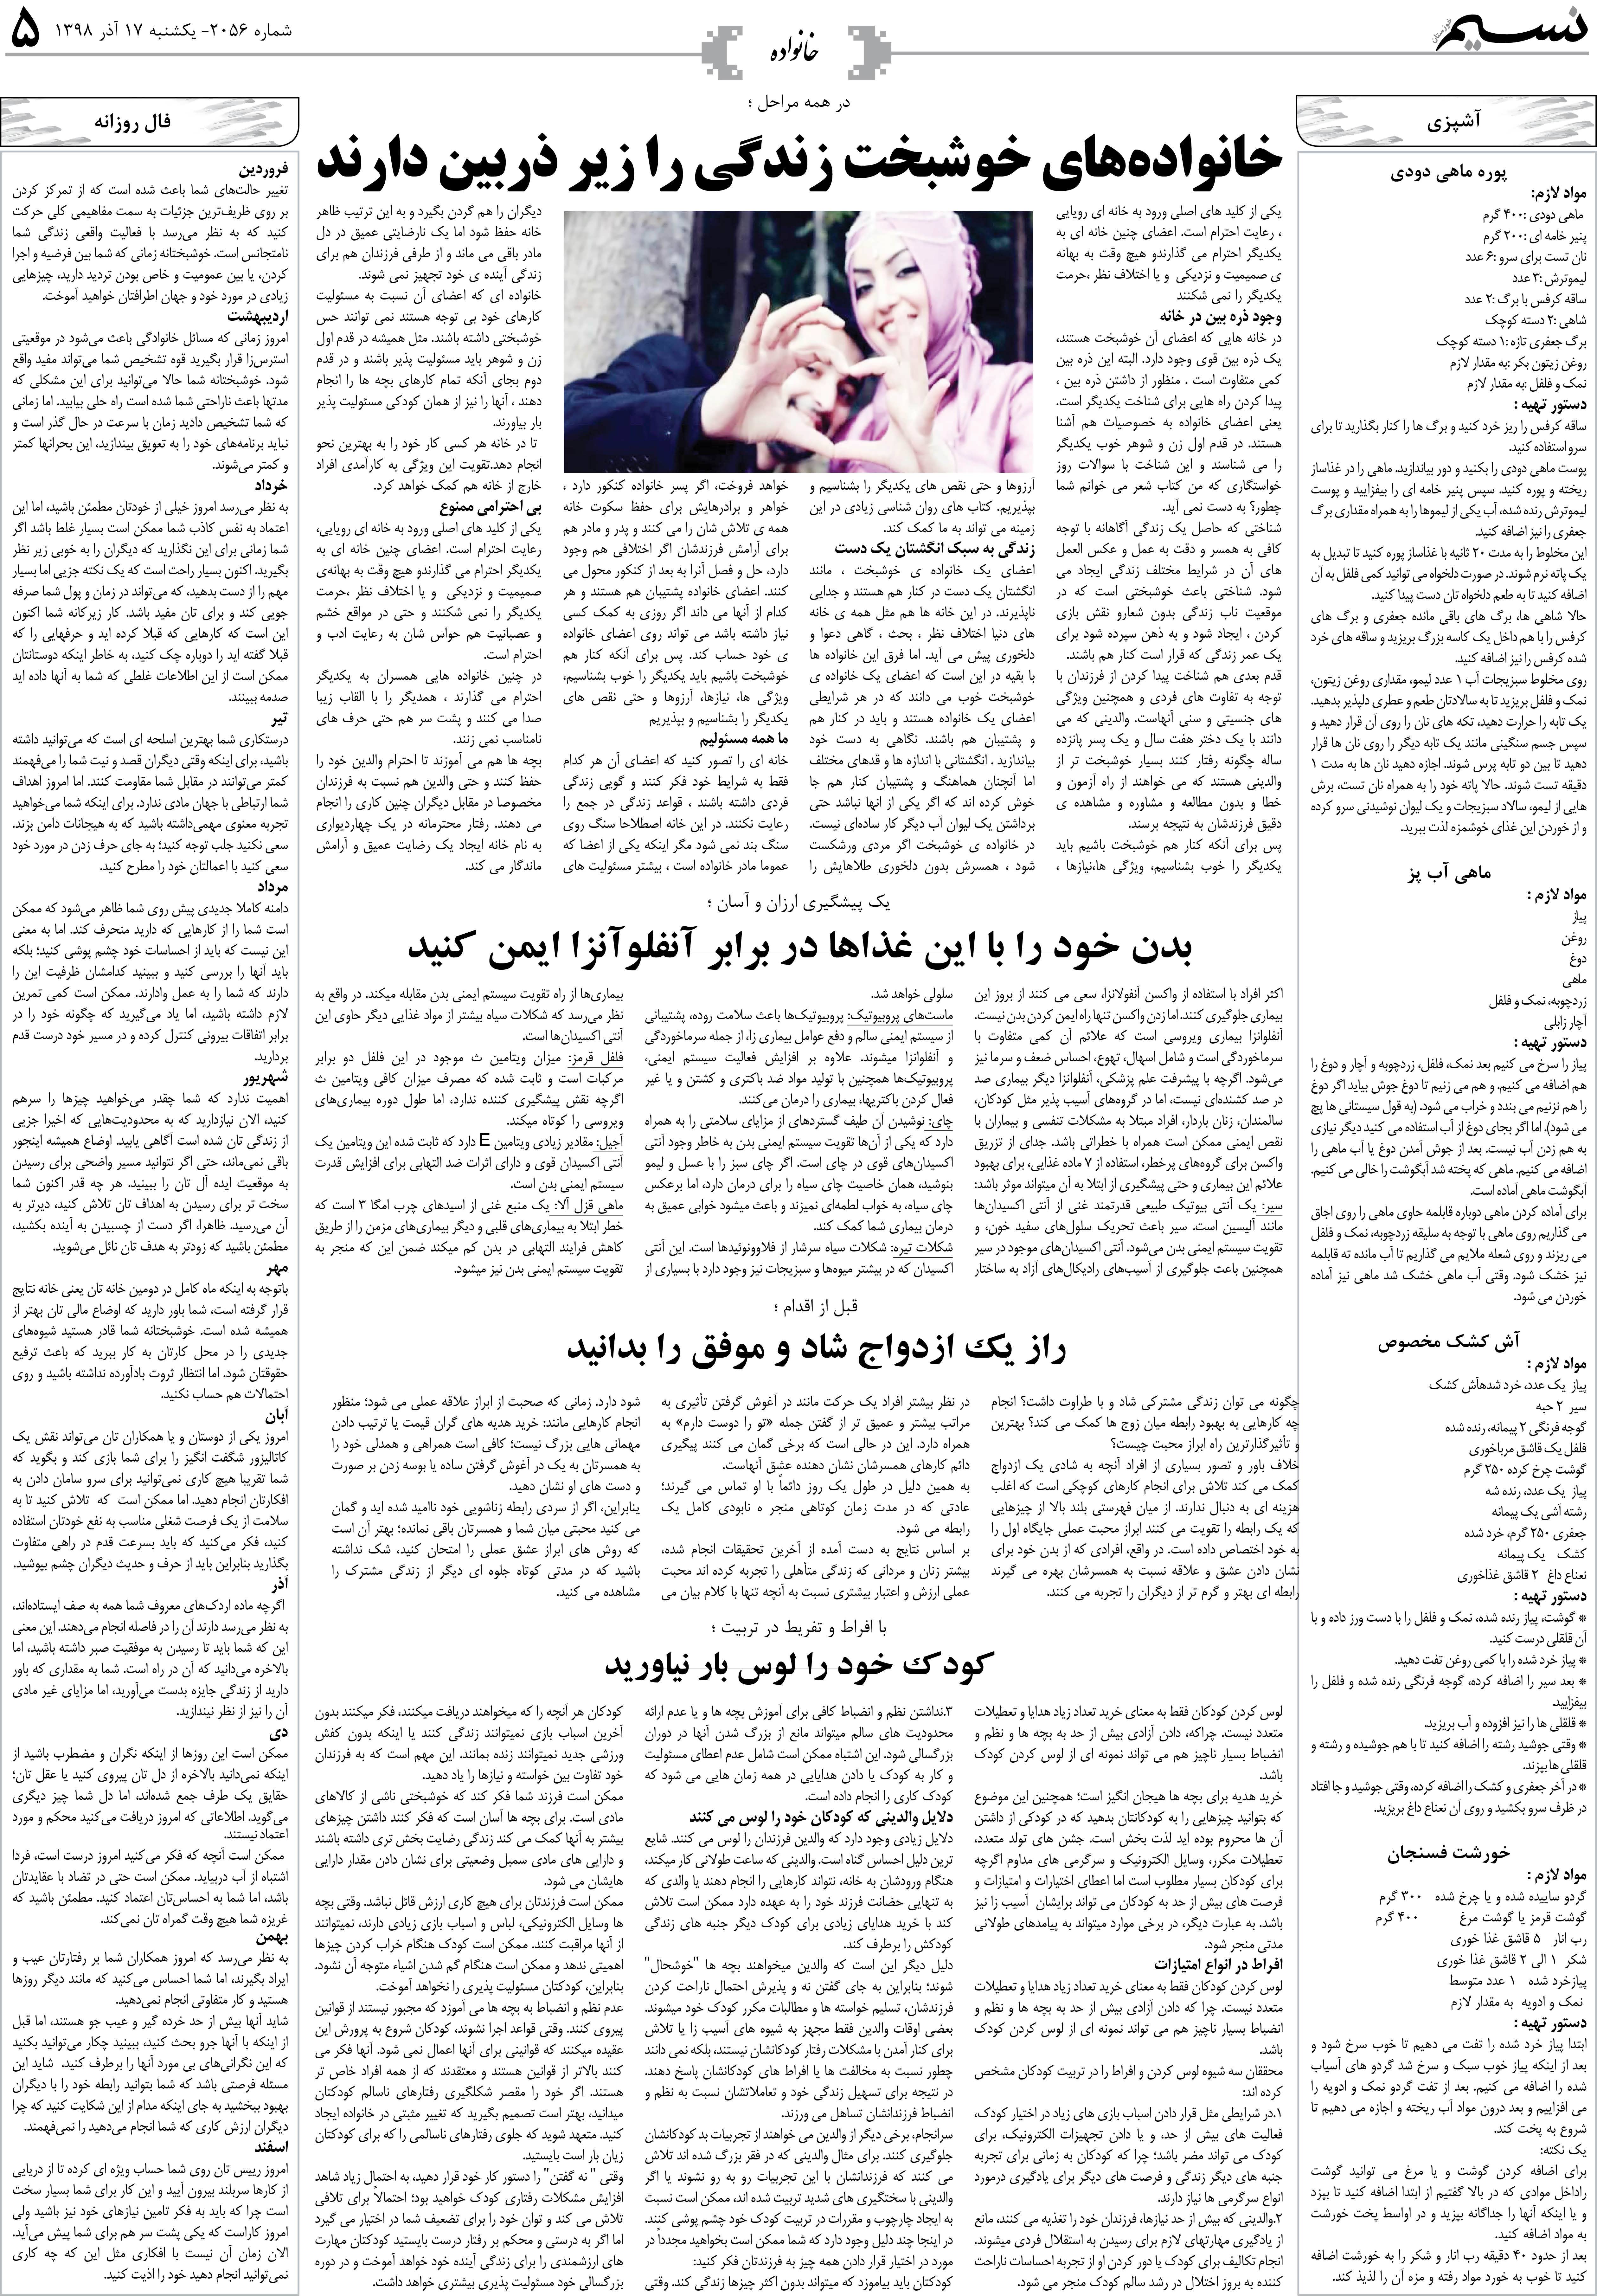 صفحه خانواده روزنامه نسیم شماره 2056